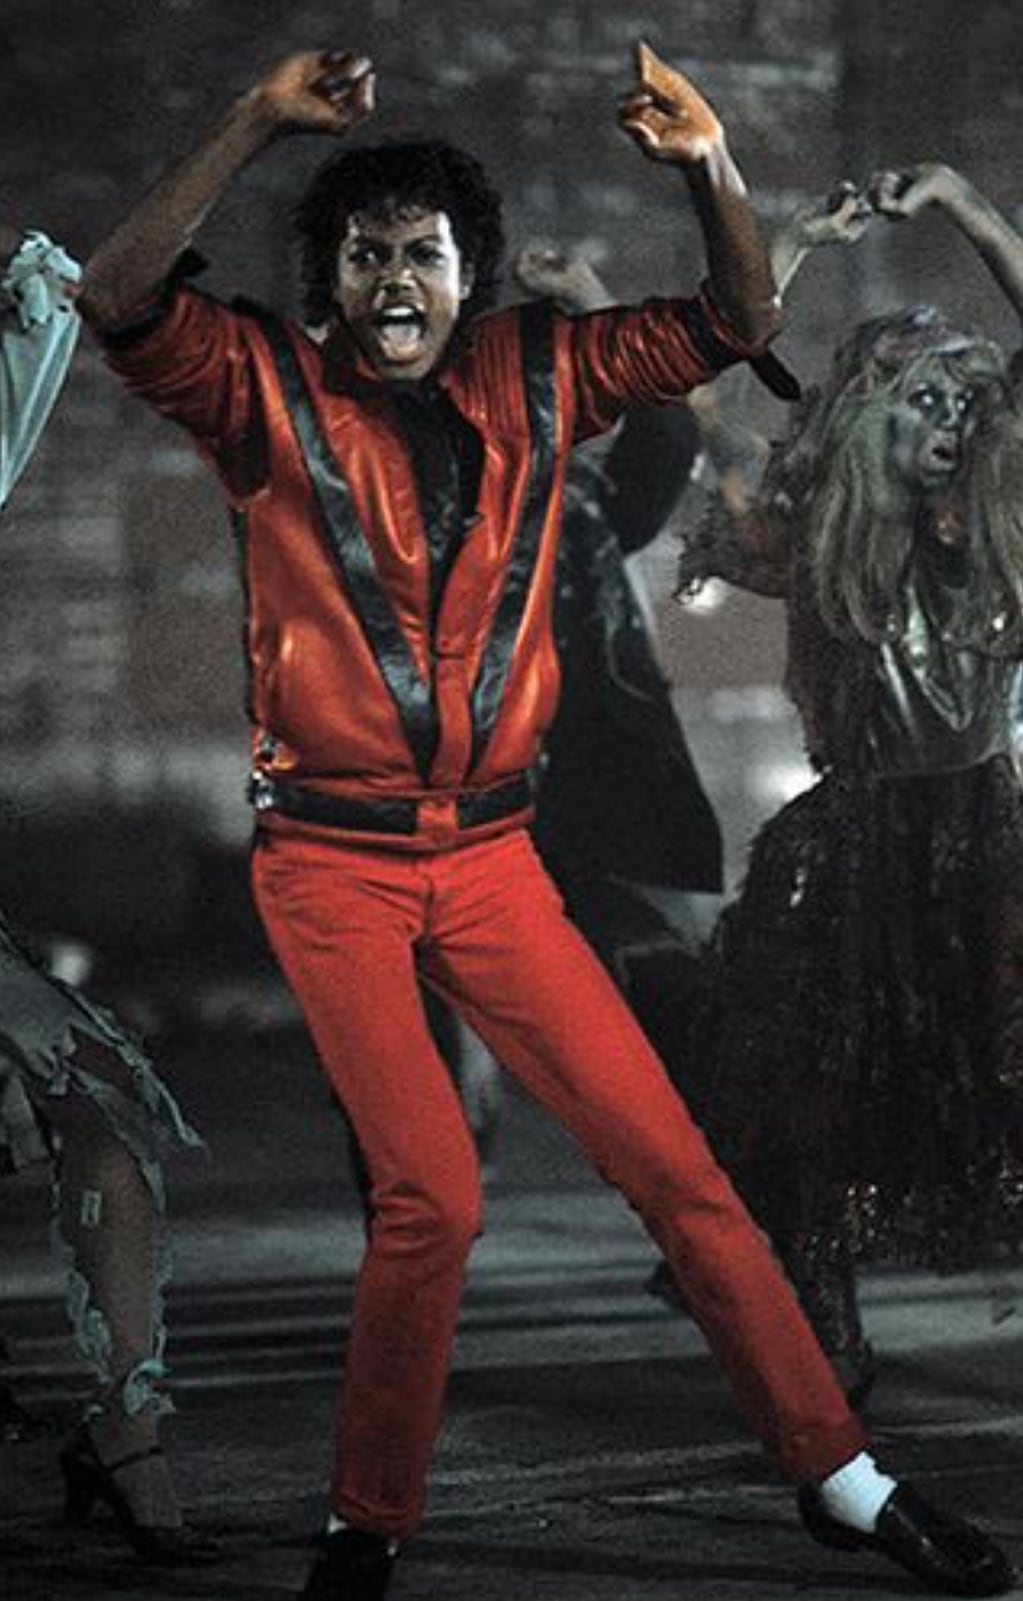 El cantante siguió bailando la coreografía del video hasta sus últimos conciertos.